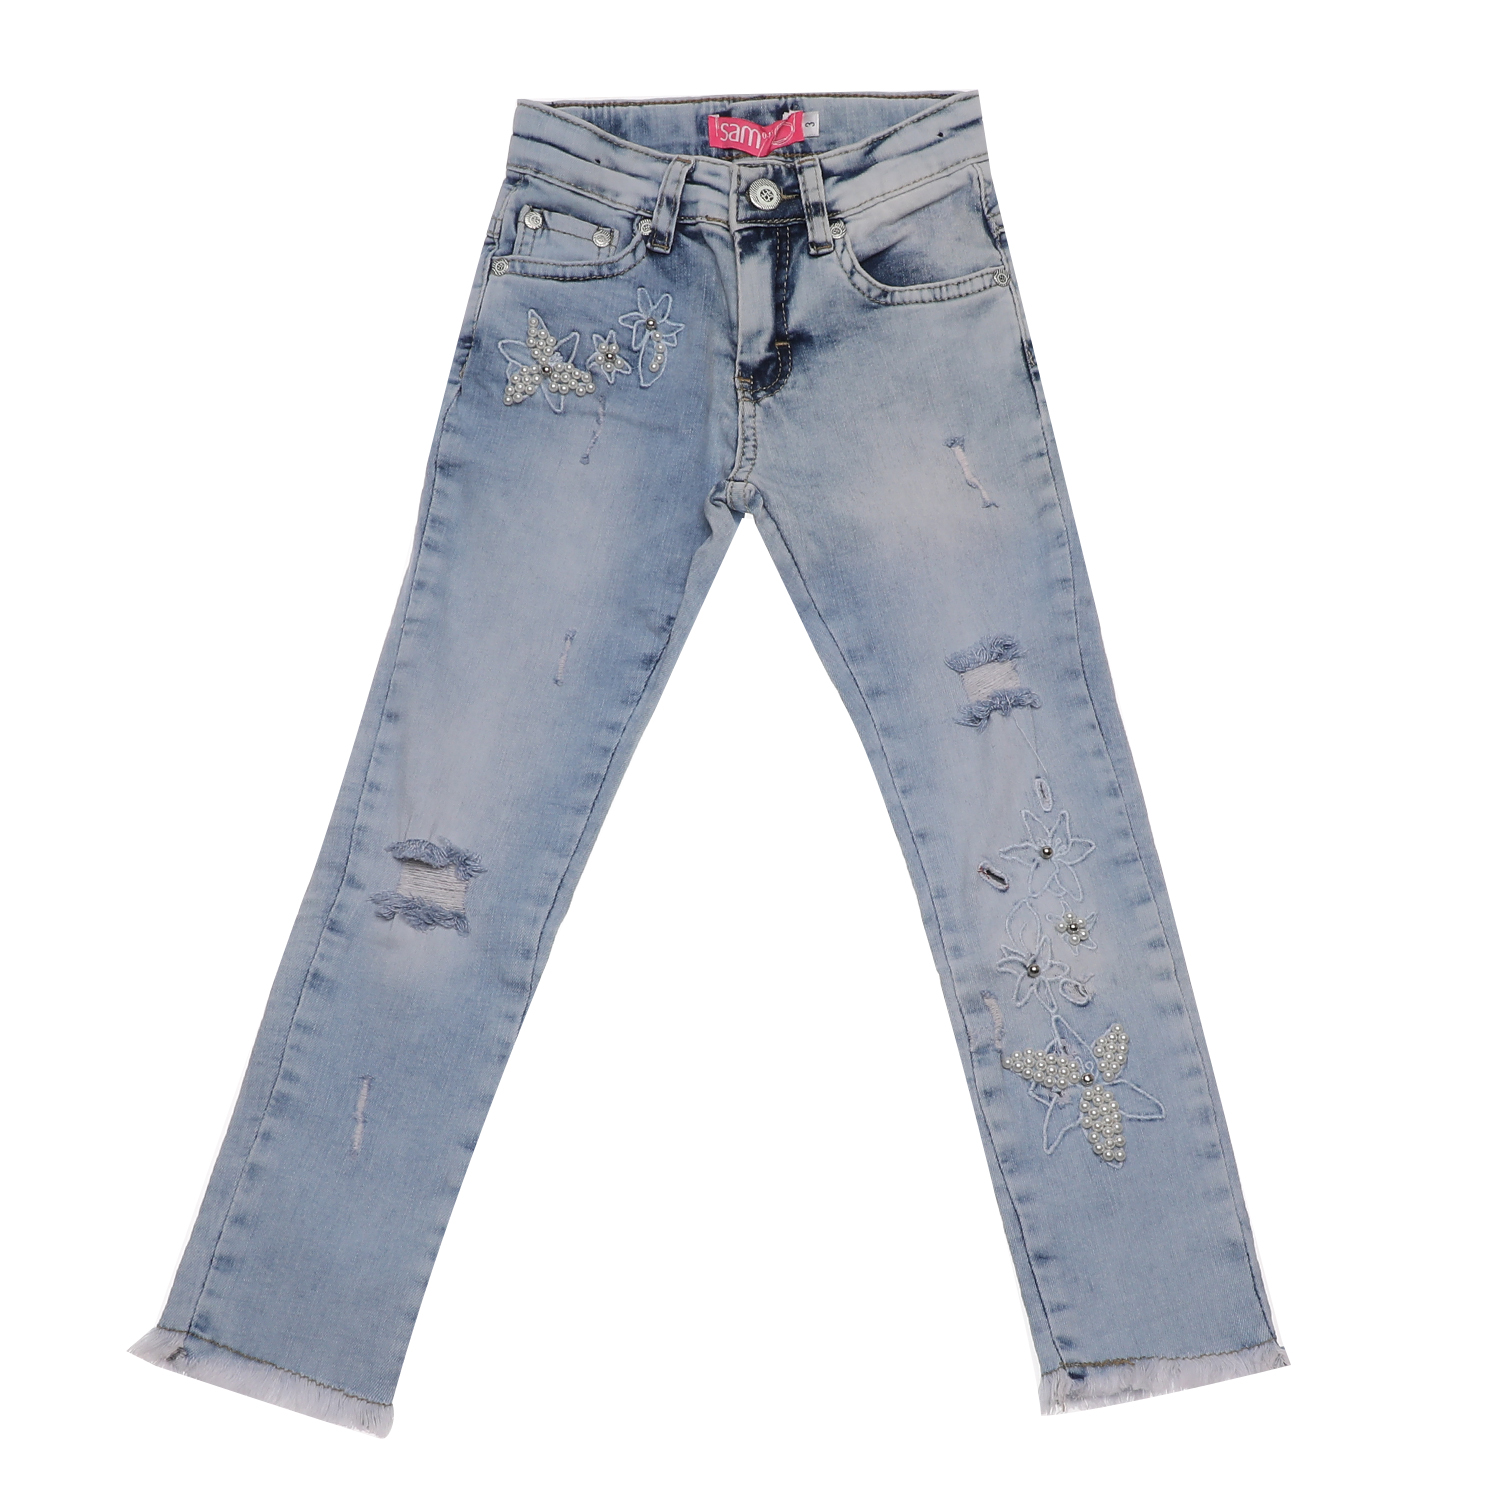 Παιδικά/Girls/Ρούχα/Παντελόνια SAM 0-13 - Παιδικό jean παντελόνι SAM 0-13 μπλε